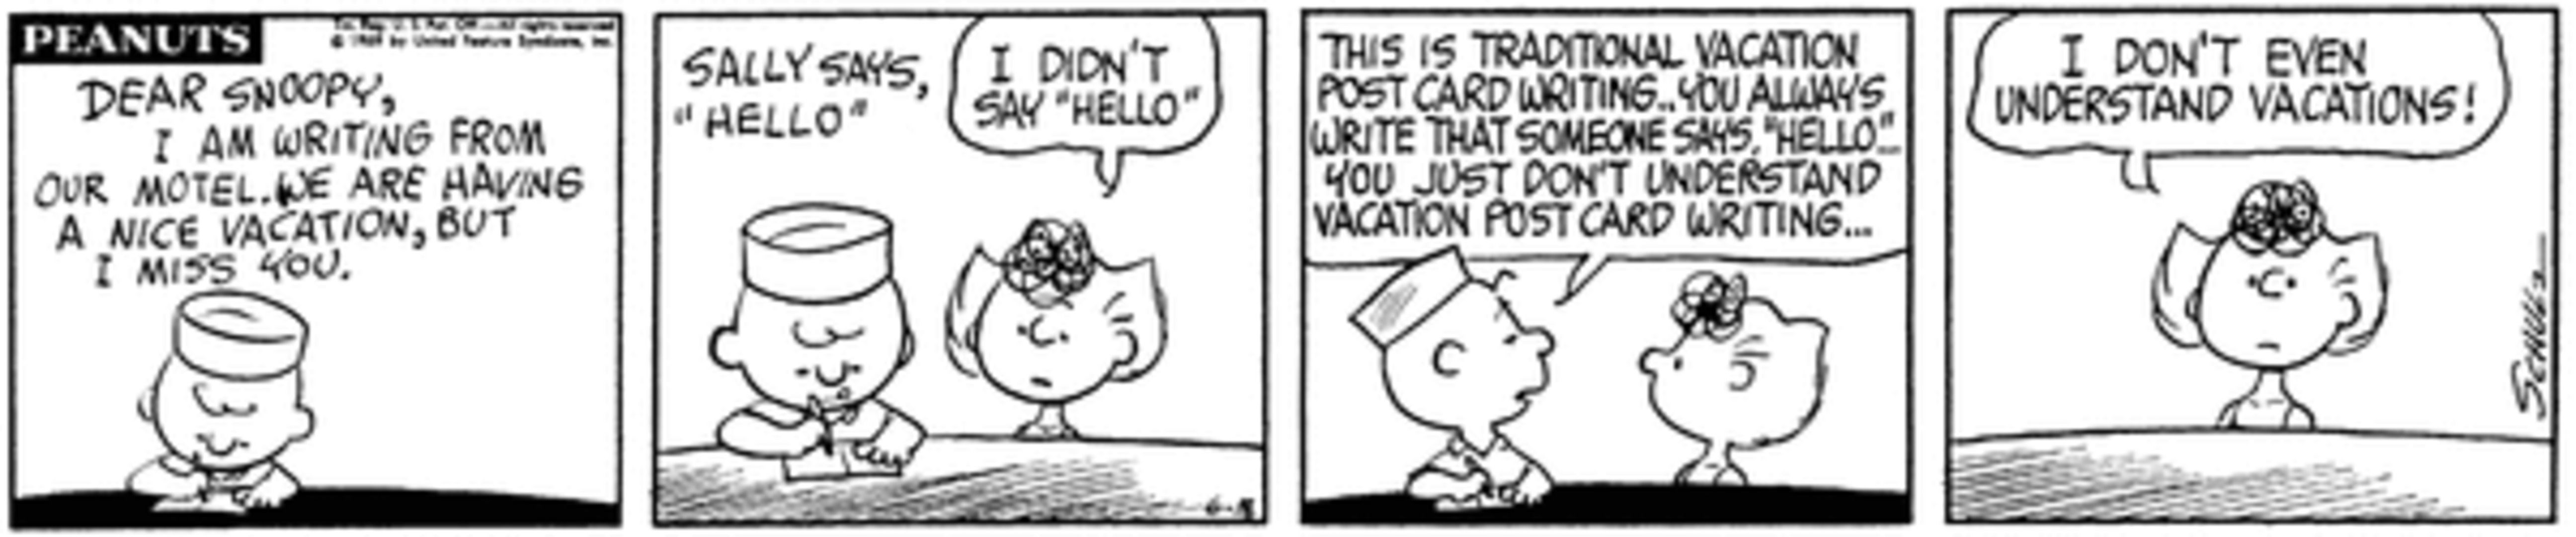 Peanuts Summer, Charlie Brown escrevendo um cartão postal para Snoopy enquanto está de férias com uma Sally confusa.